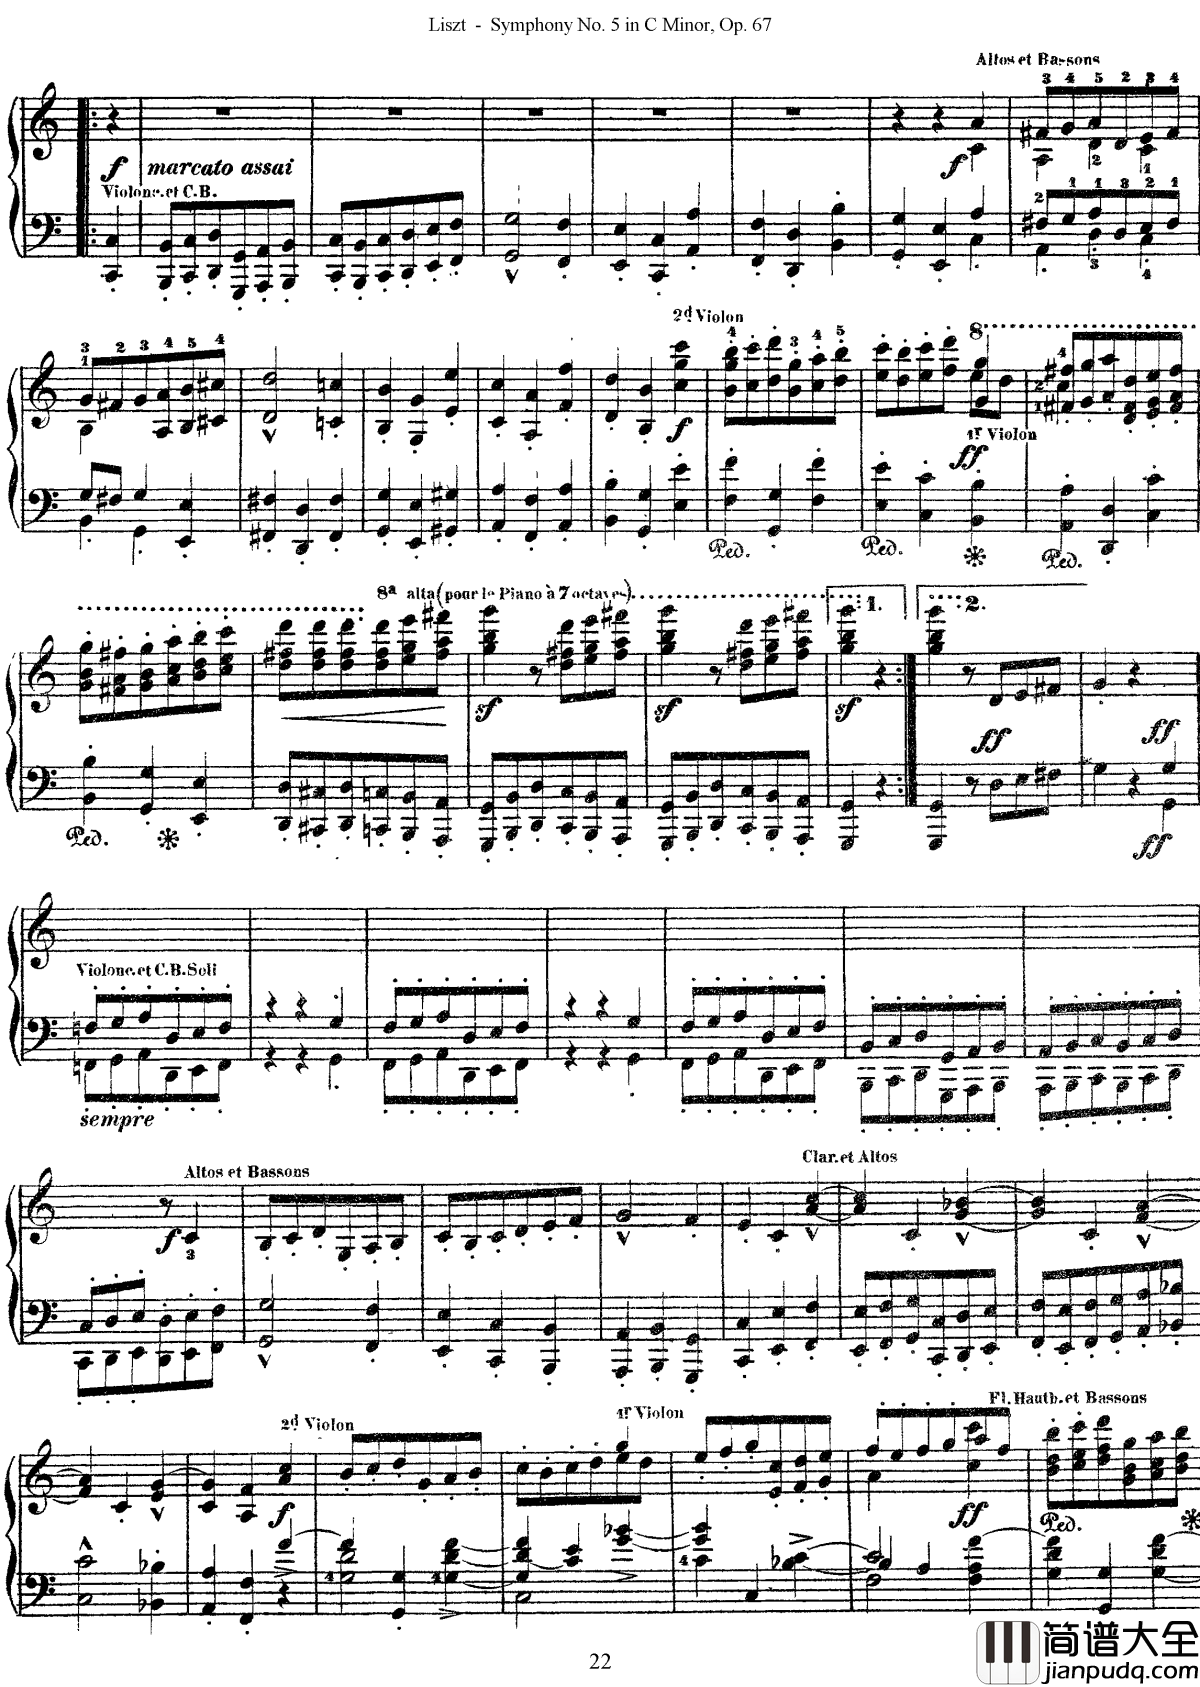 第五交响乐的钢琴曲钢琴谱_李斯特_李斯特改编自贝多芬